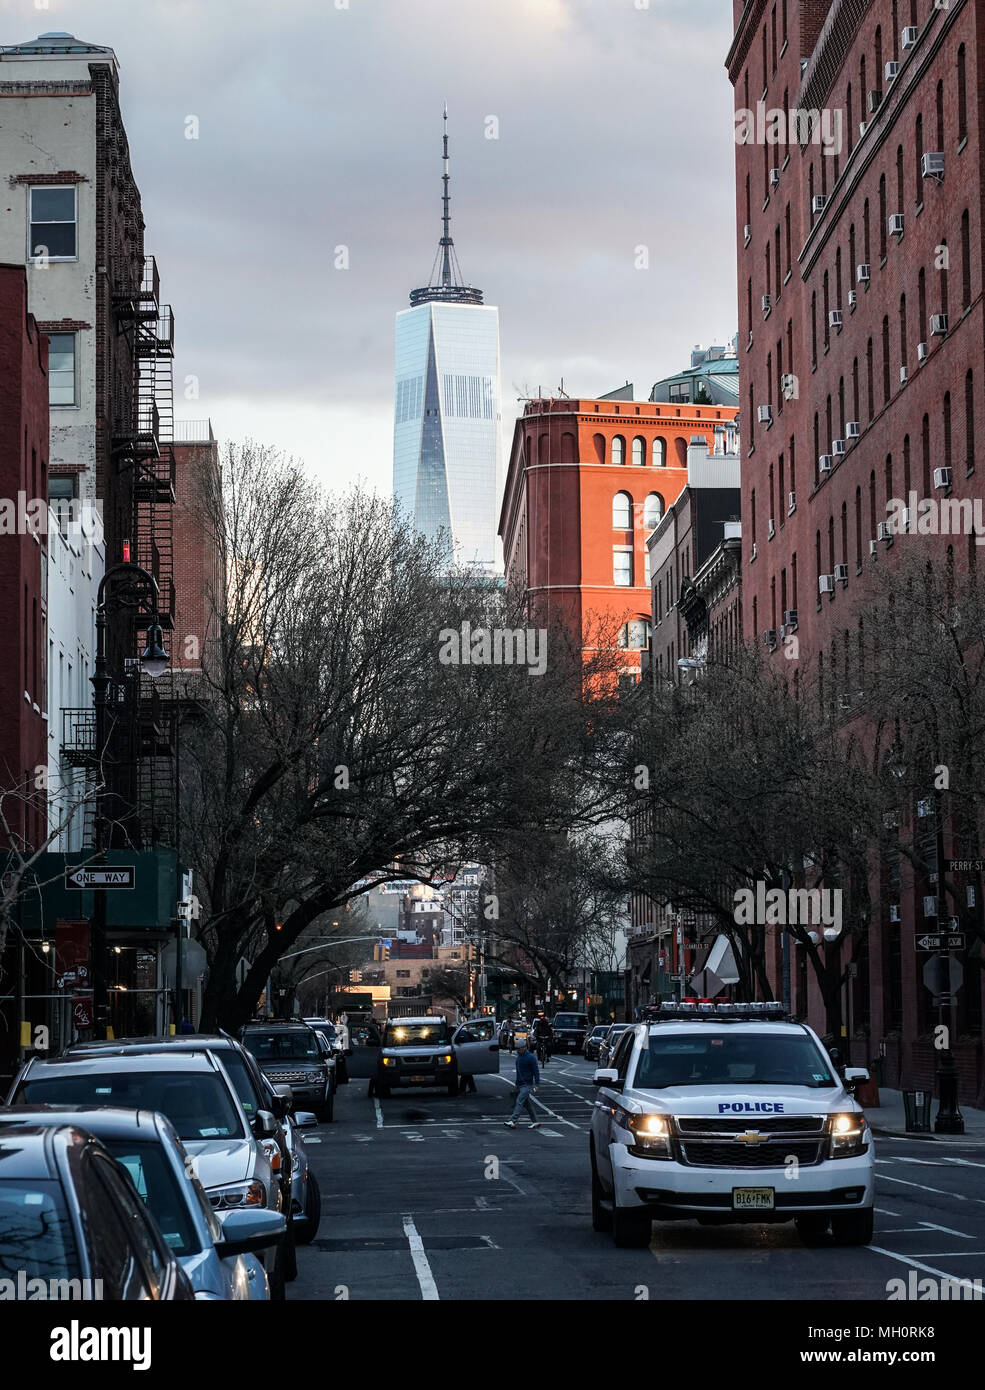 Einen allgemeinen Überblick über das One World Trade Center (Turm) in Lower Manhattan, New York City, in den Vereinigten Staaten. Aus einer Reihe von Reisen Fotos in Th Stockfoto